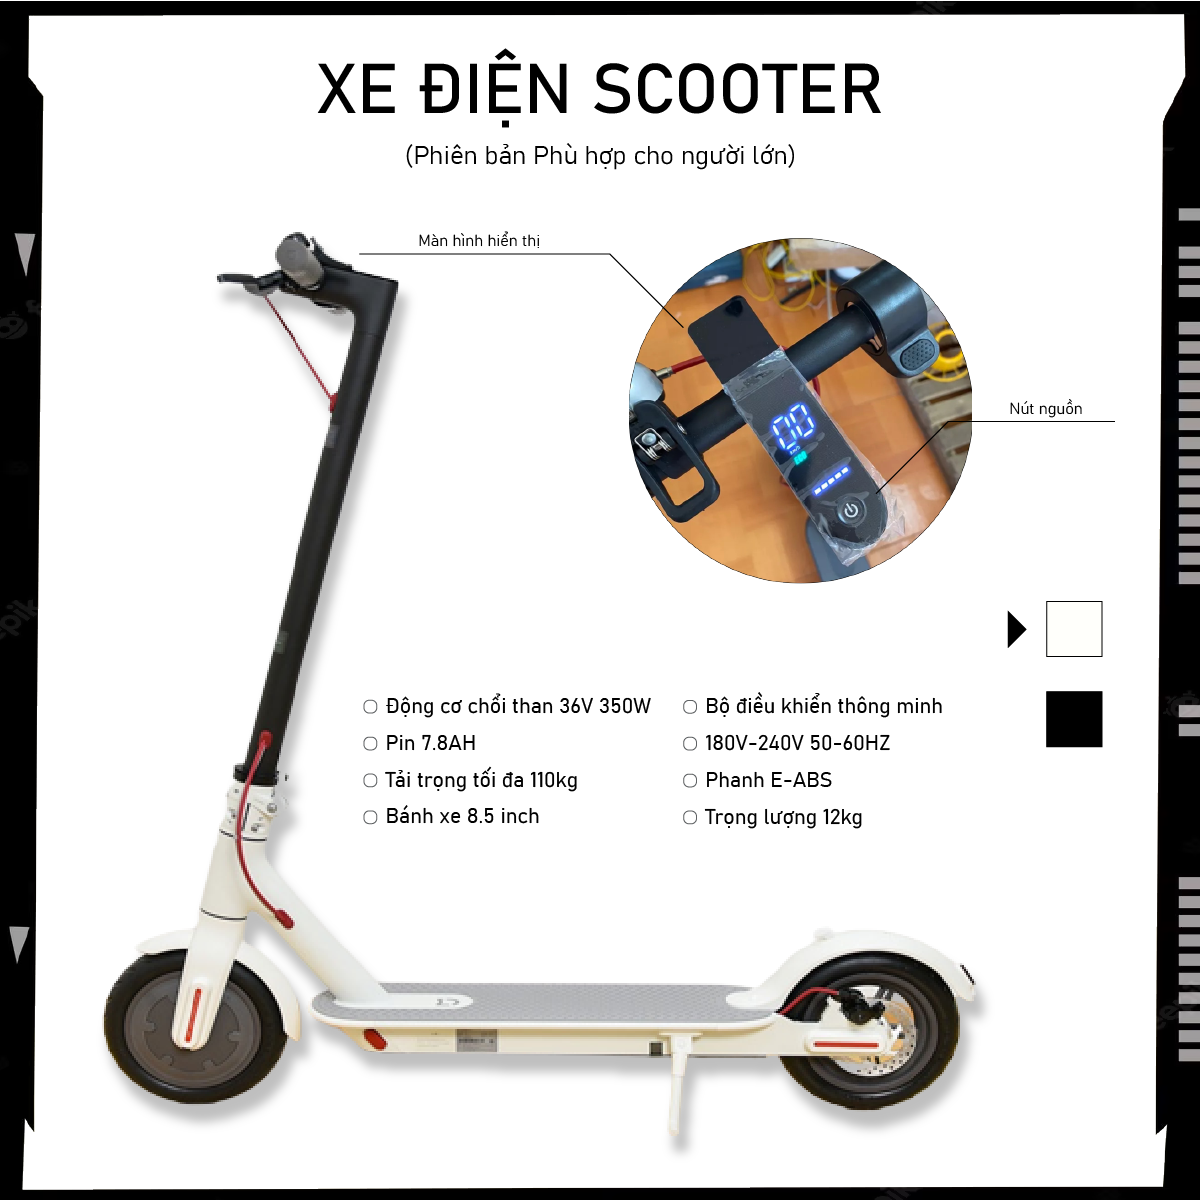 Xe điện scooter gấp bỏ cốp xe nhỏ gọn siêu tiện lợi chạy ra bãi gửi xe đi